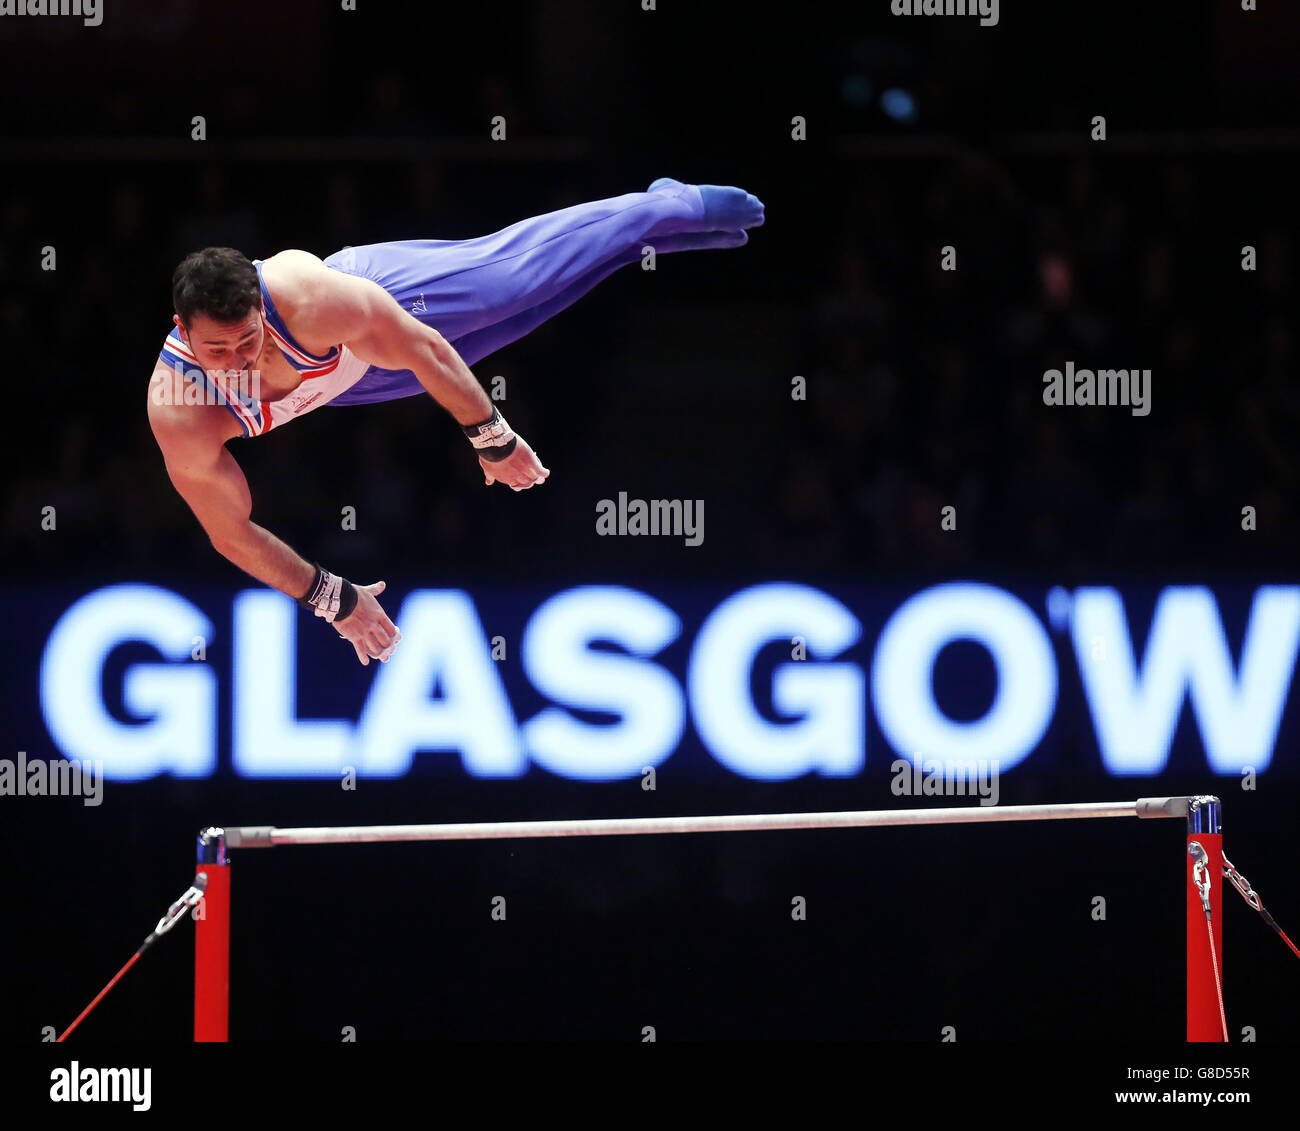 Der britische Kristian Thomas tritt am sechsten Tag der Weltmeisterschaften der Gymnastik 2015 bei der SSE Hydro, Glasgow, an der Horizontalen Bar an. Stockfoto